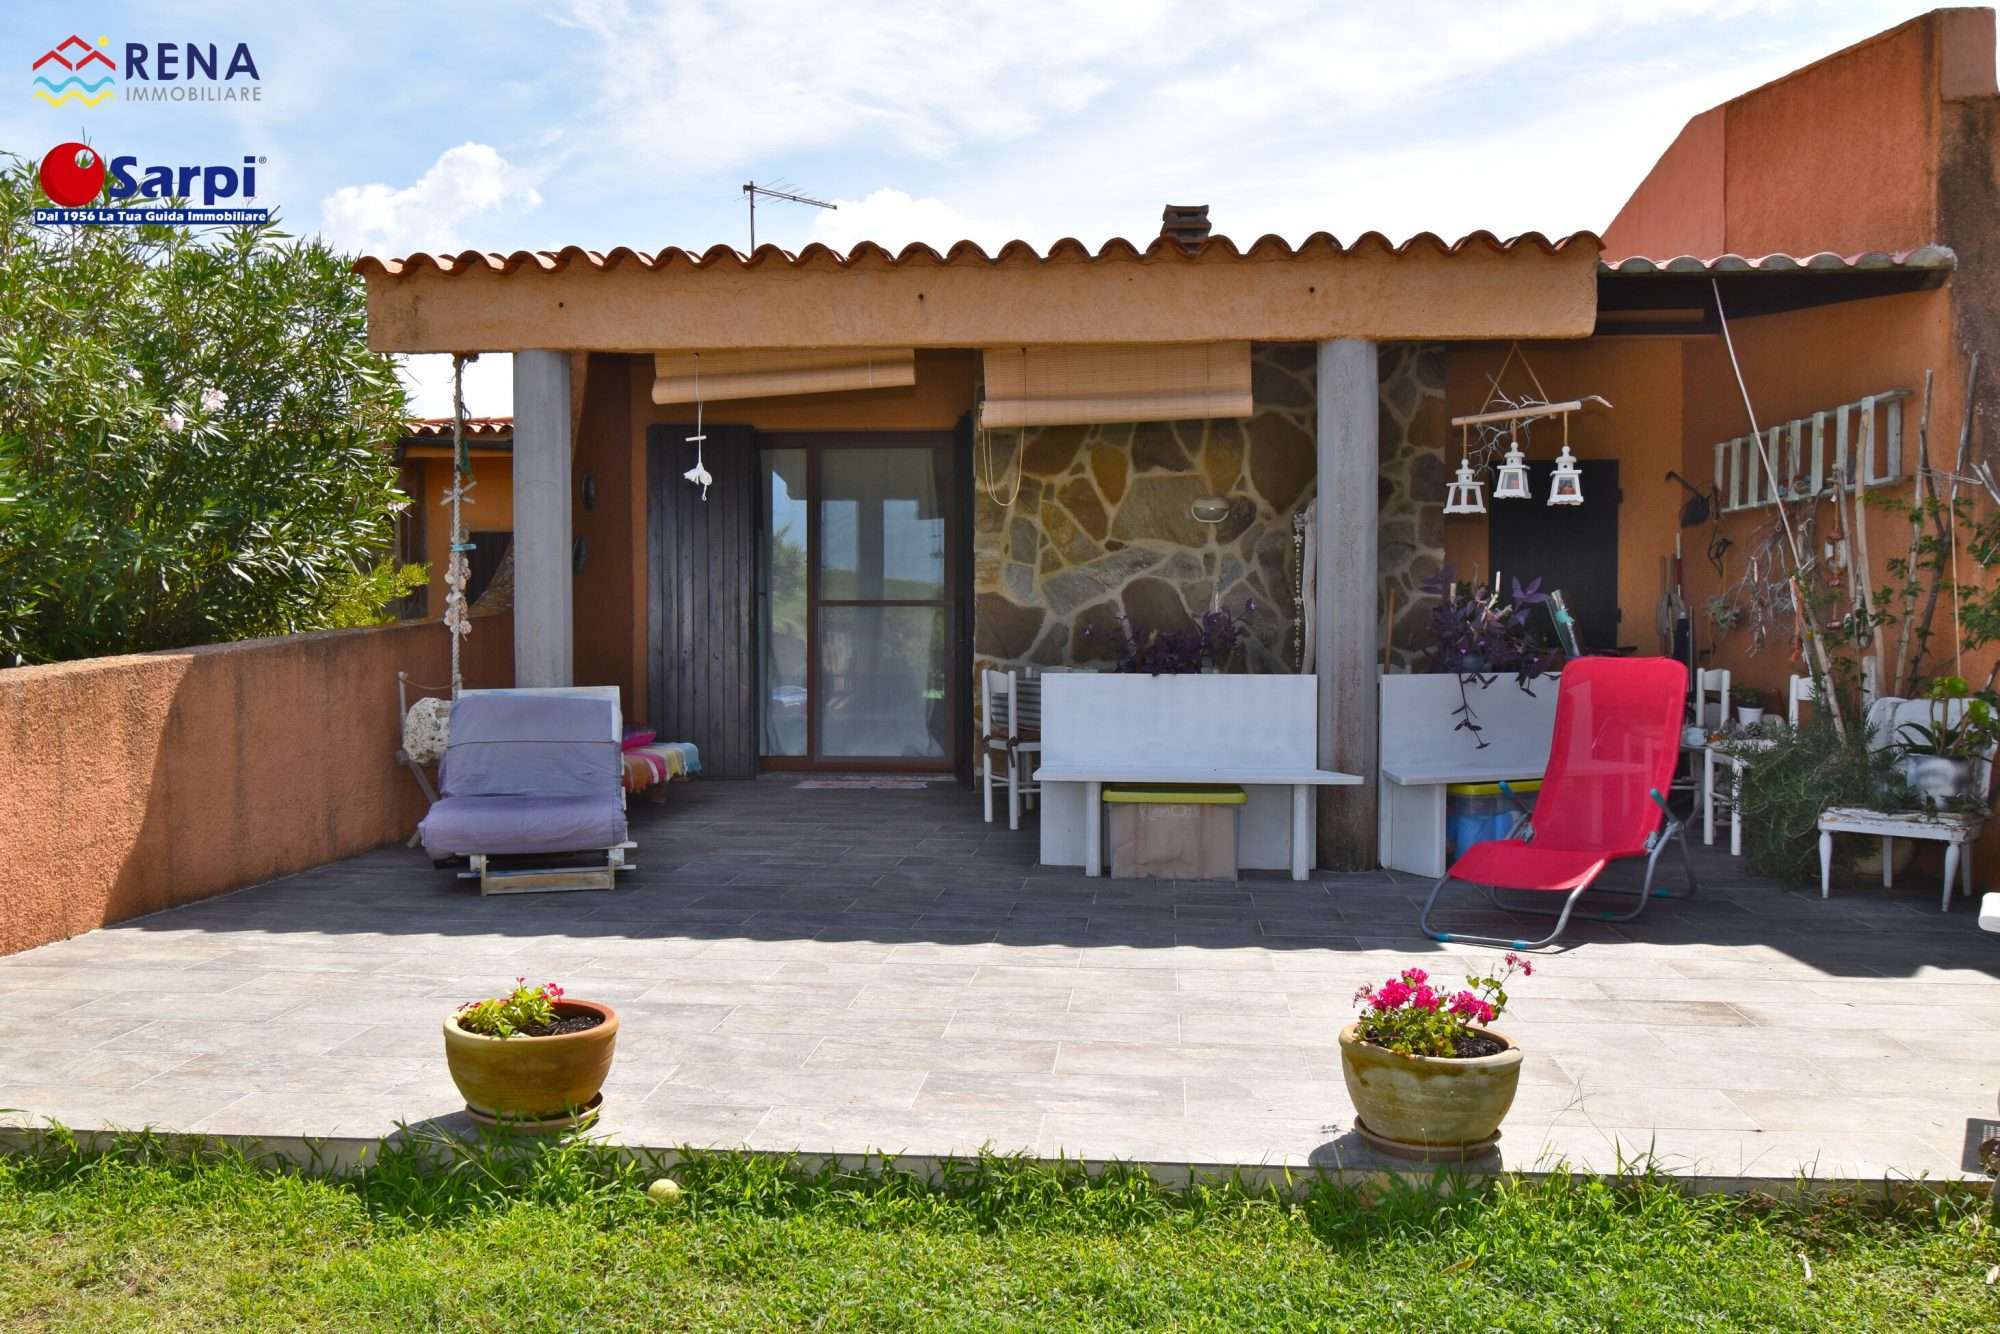 Villetta in residence con veranda e giardino privato – Rena Majore